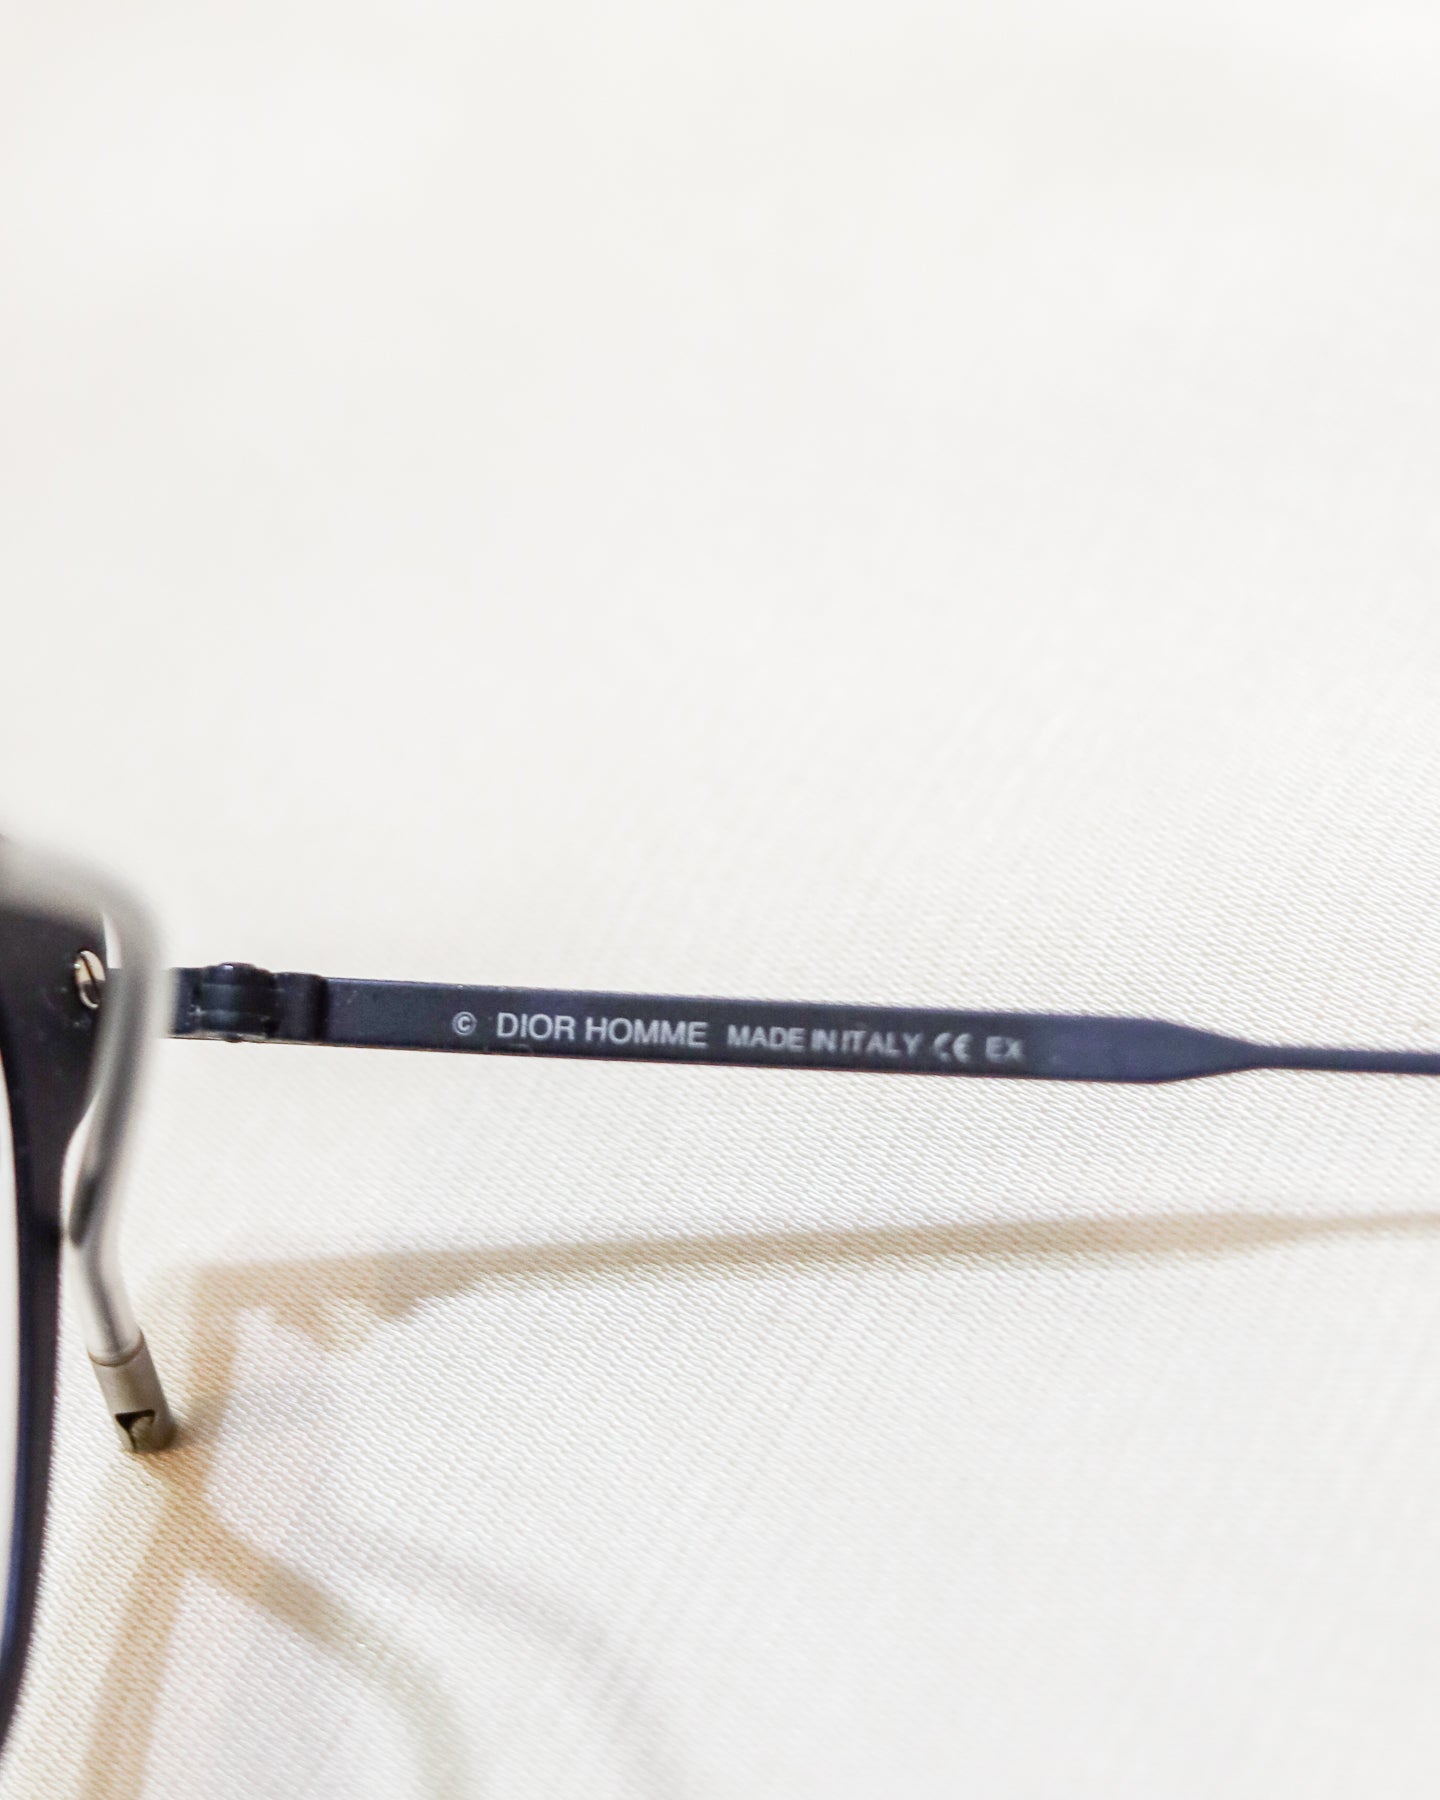 Óculos de sol Christian Dior Blue Wayfarer - com caixa